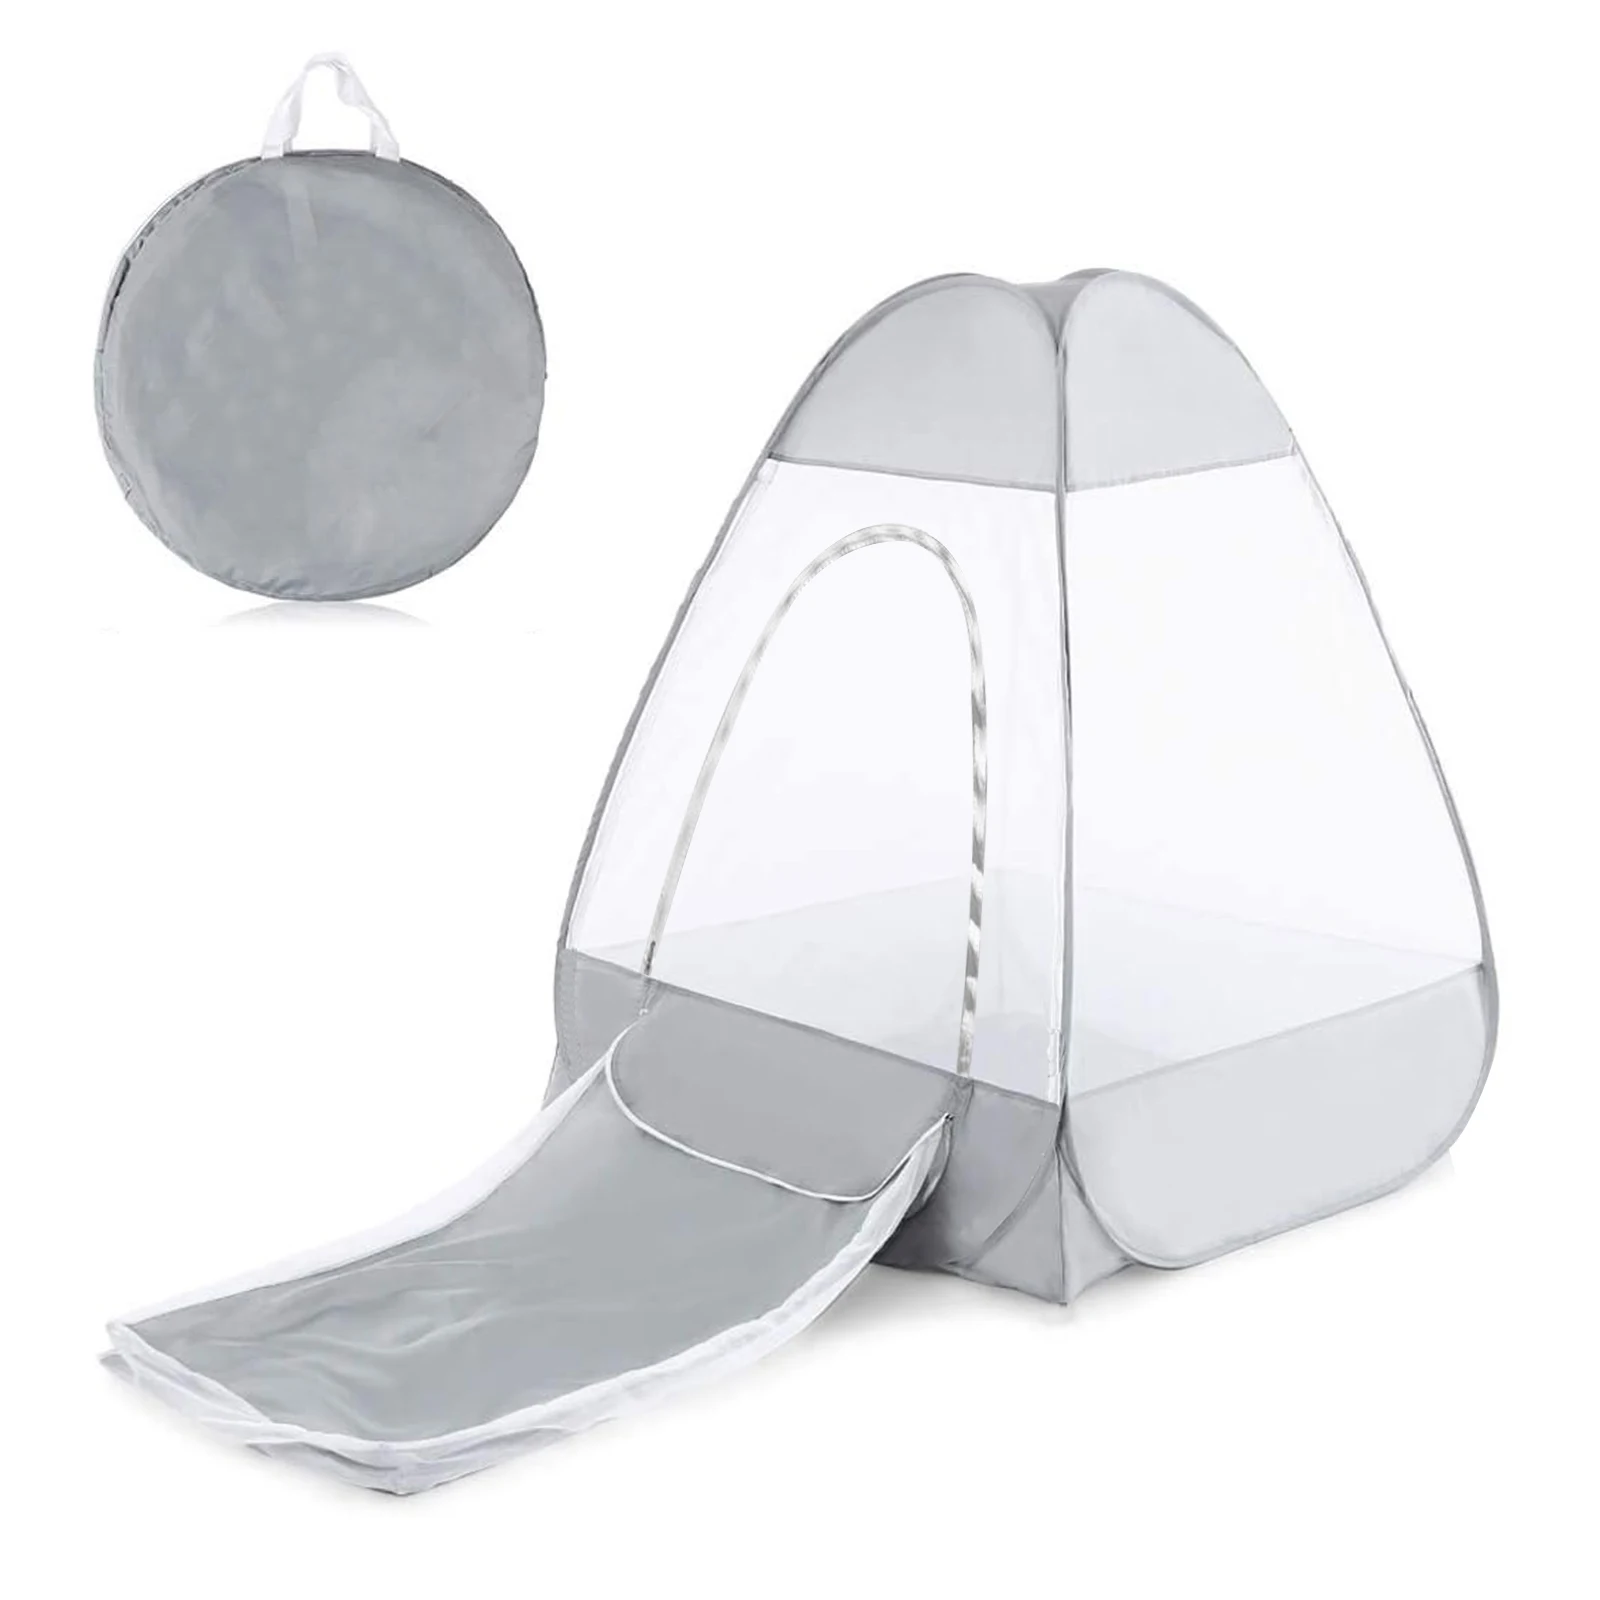 

Навес Cabana для медитации, прочная Защитная Сетчатая палатка из материала Оксфорд, быстрая установка, идеально подходит для активного отдыха